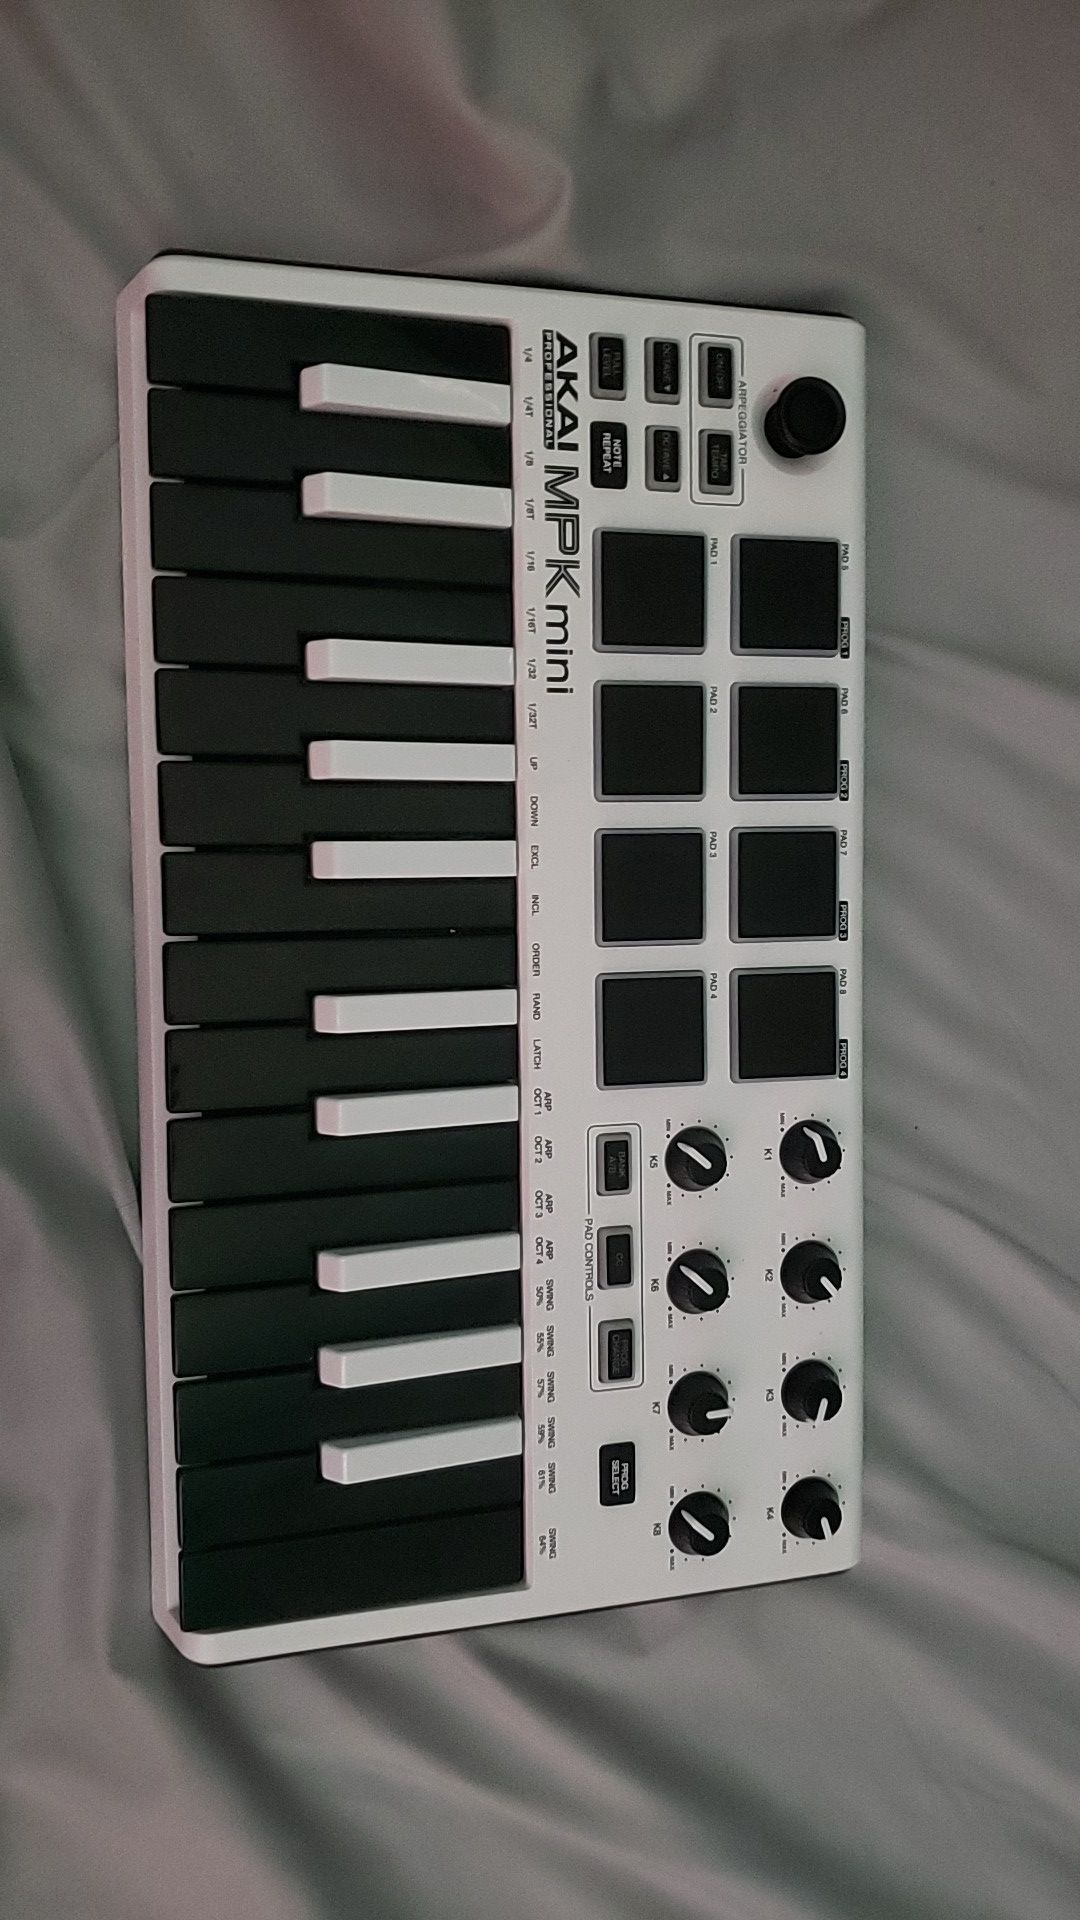 MPK Mini 2 midi keyboard